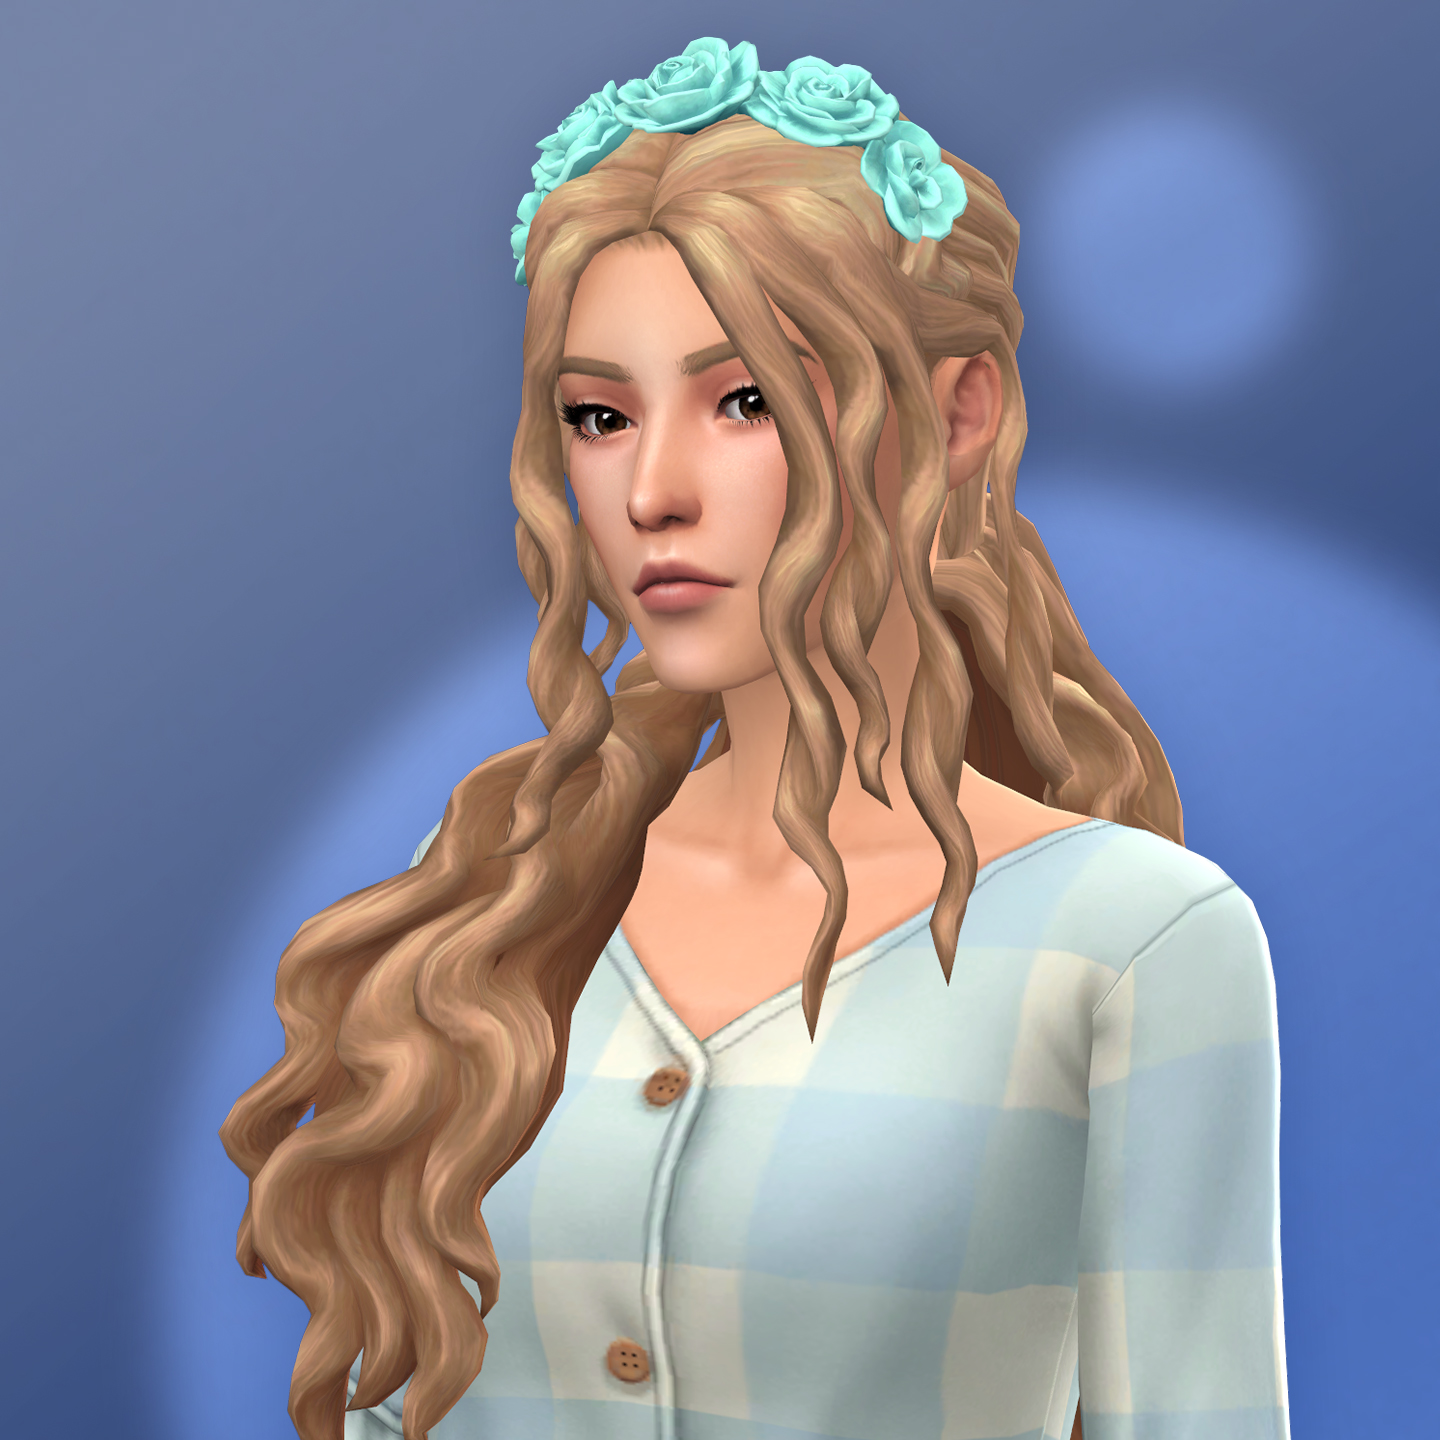 QICC - Ali Hair - The Sims 4 Create a Sim - CurseForge